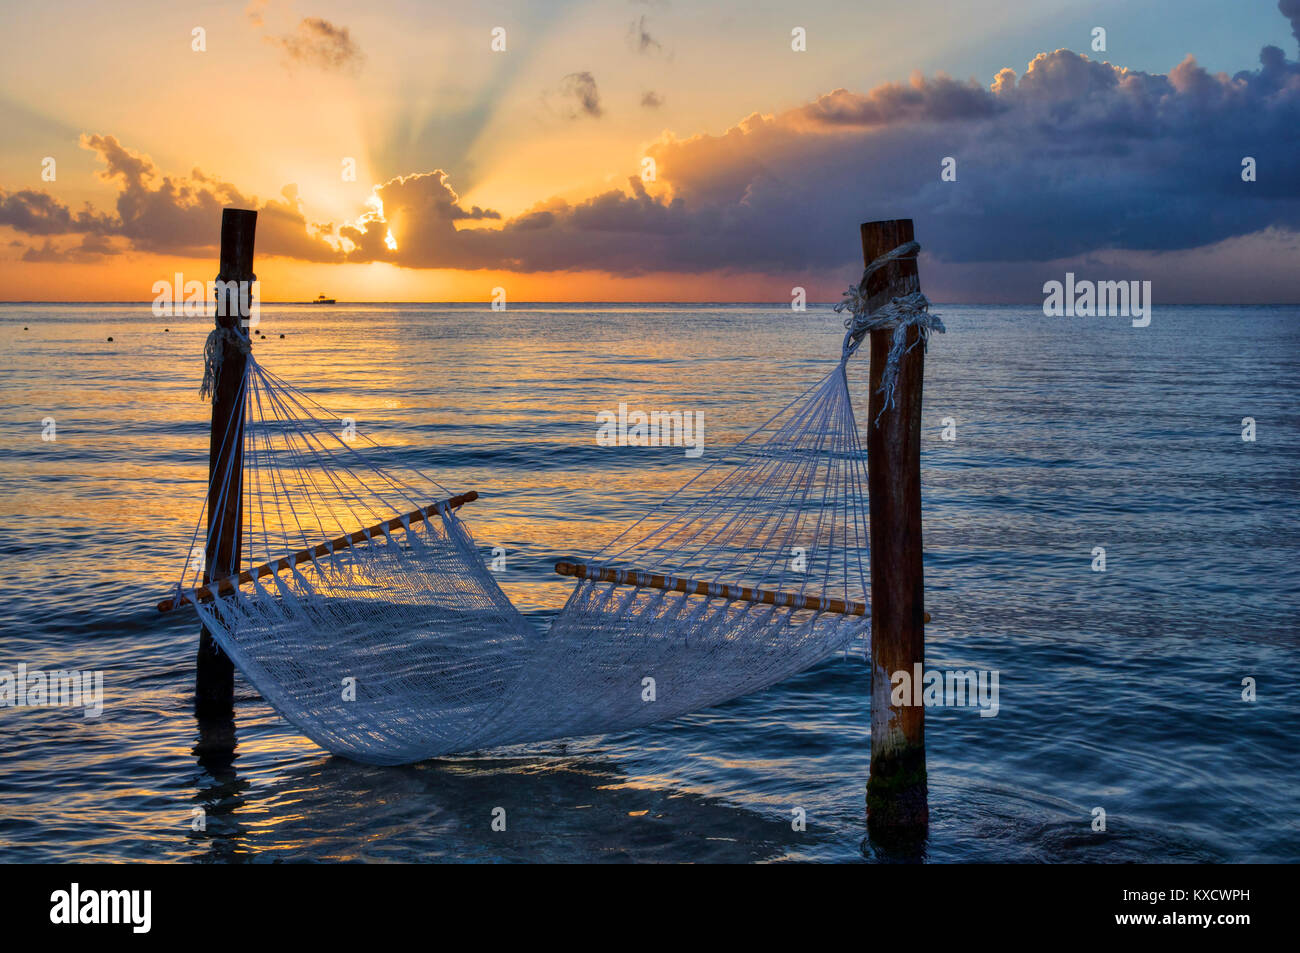 Paradis tropical, hamac sur la mer au coucher du soleil Banque D'Images